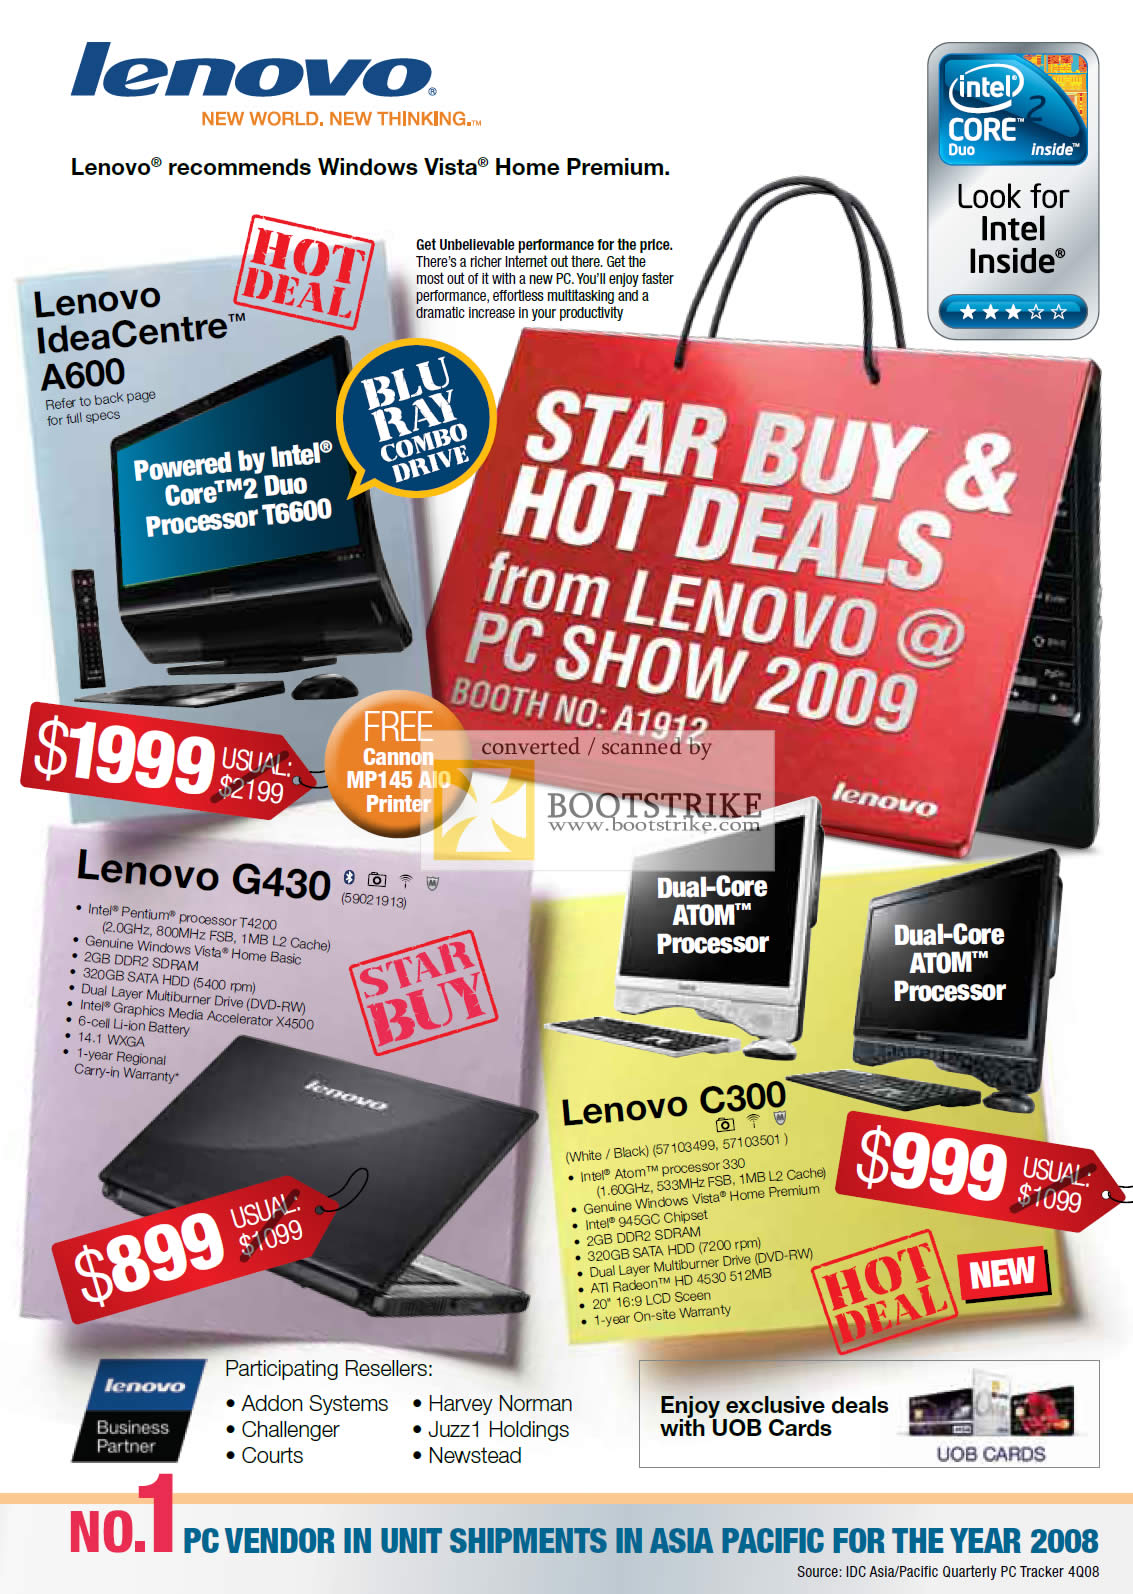 PC Show 2009 price list image brochure of Lenovo IdeaCentre A600 G430 C300 Desktop Notebooks